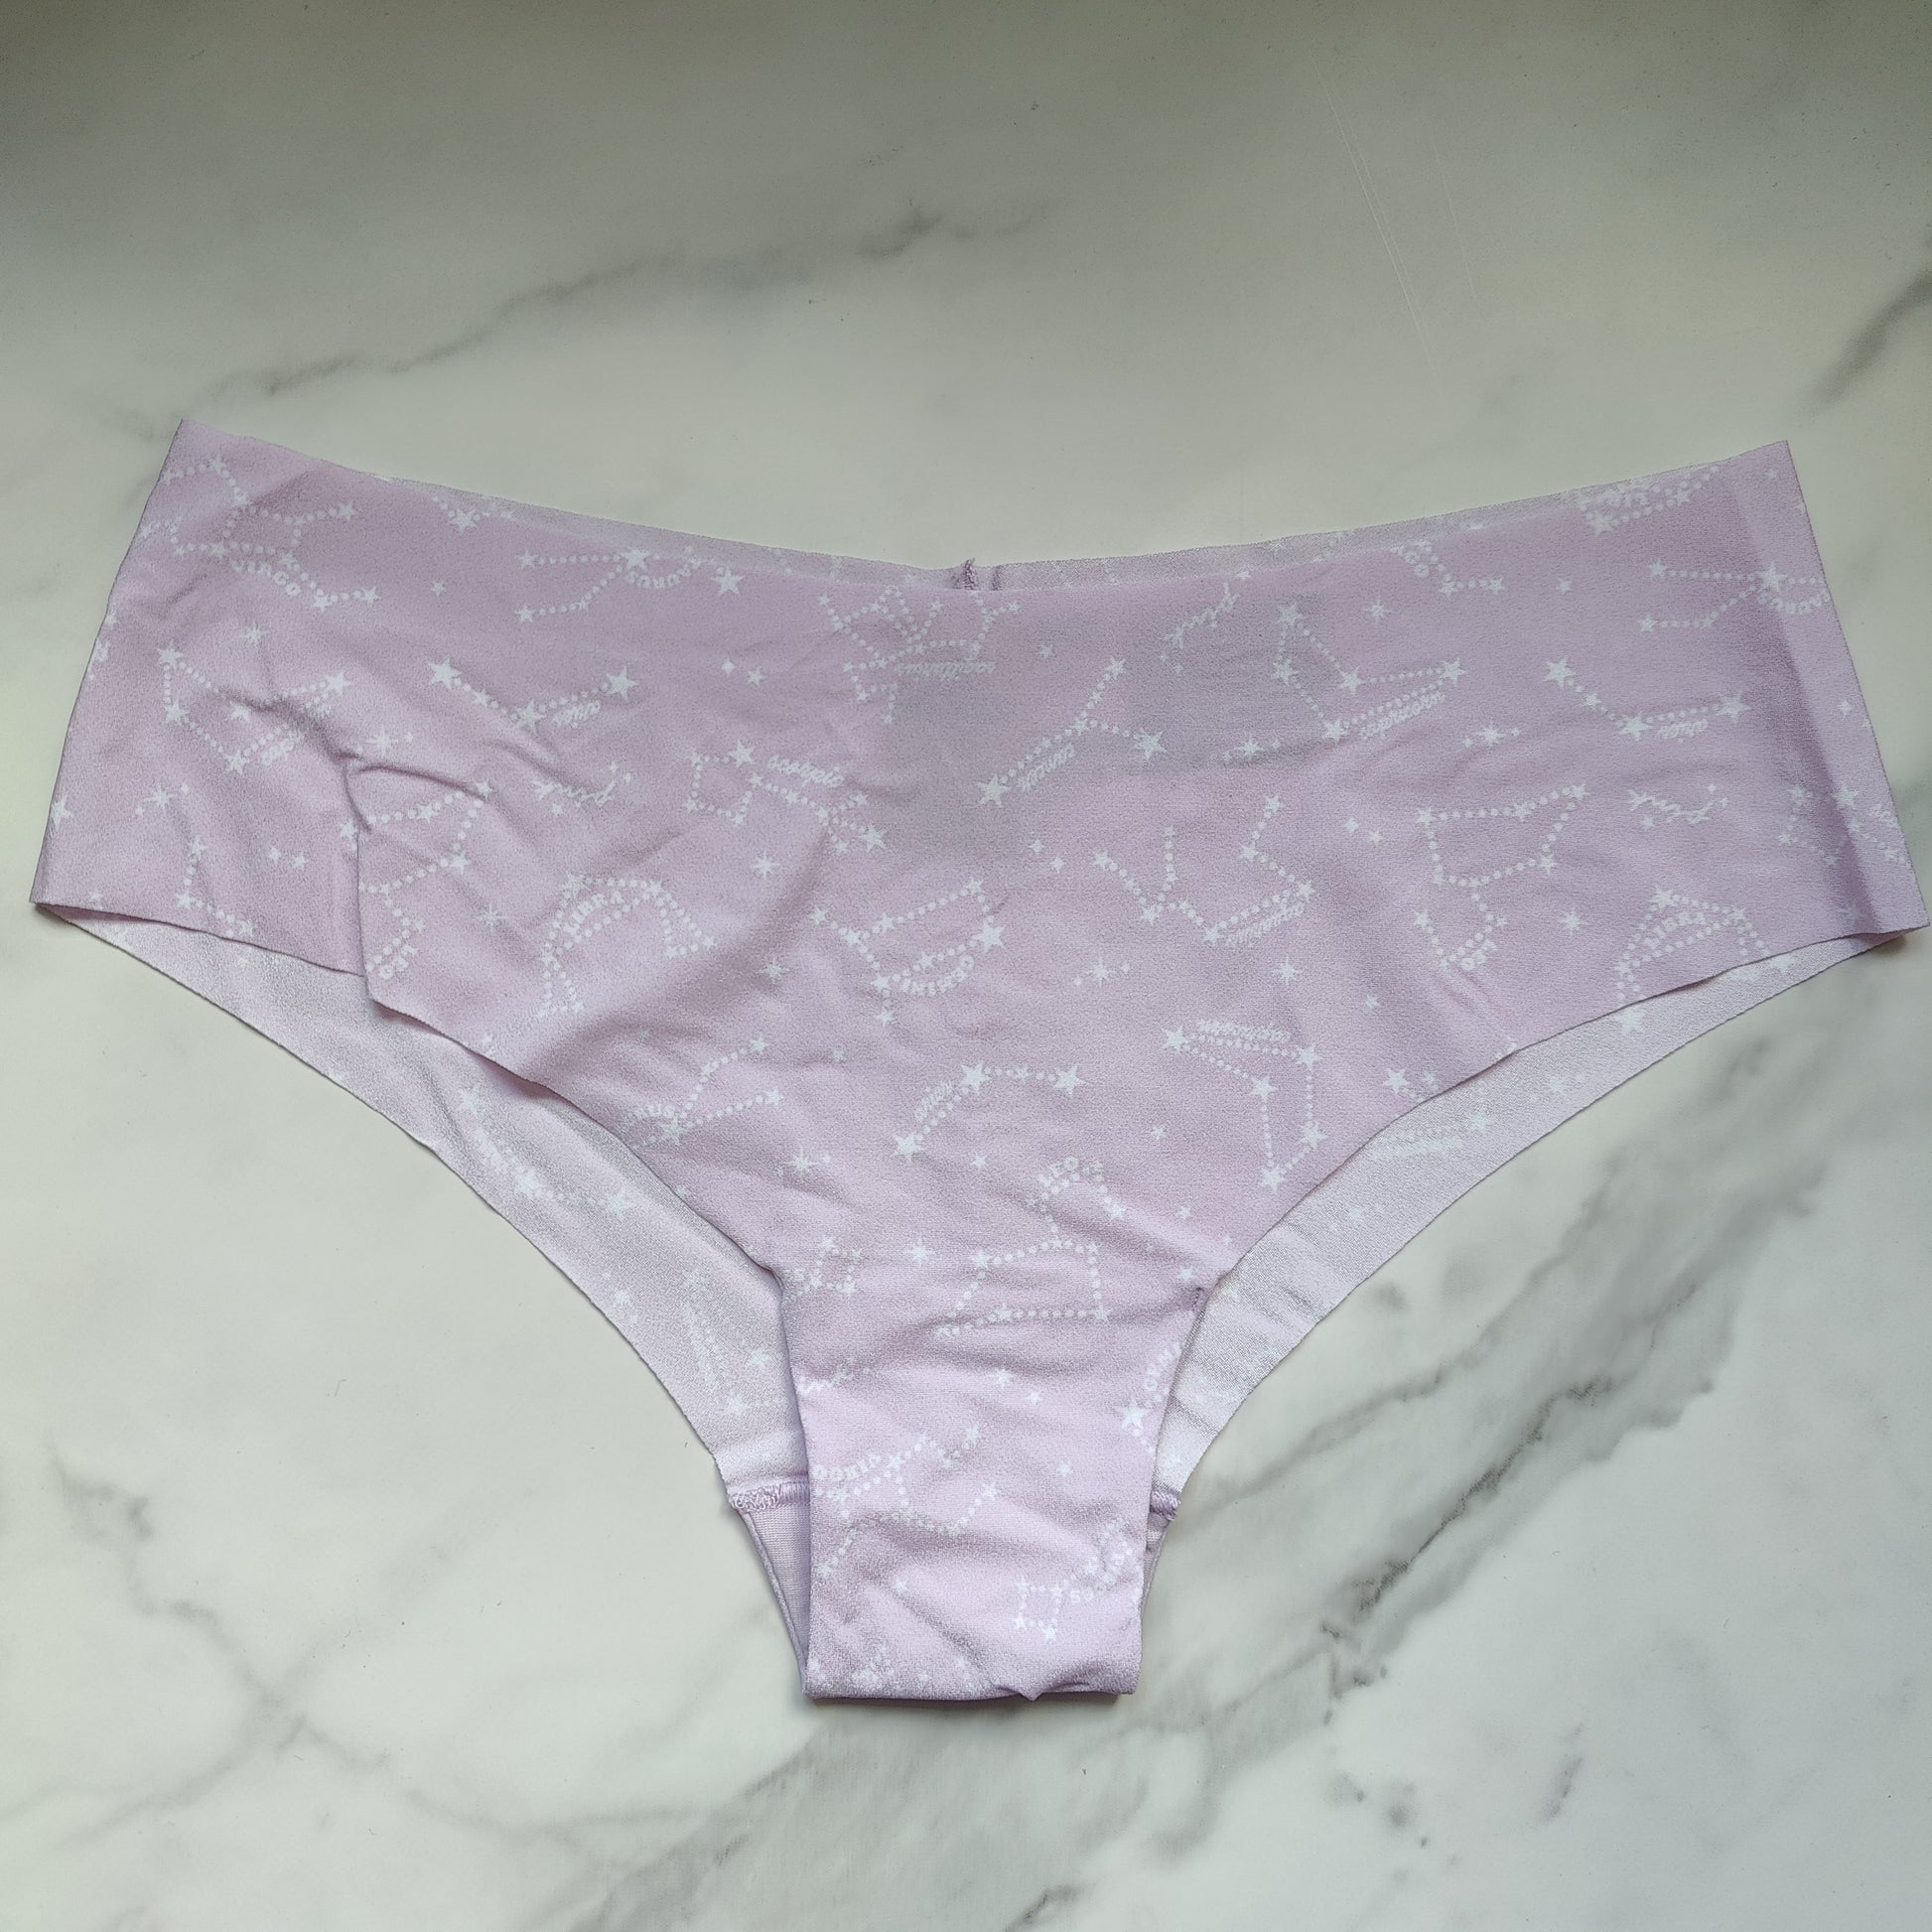 Victoria's Secret PINK No Show Cheekster, Underwear for Women, 4